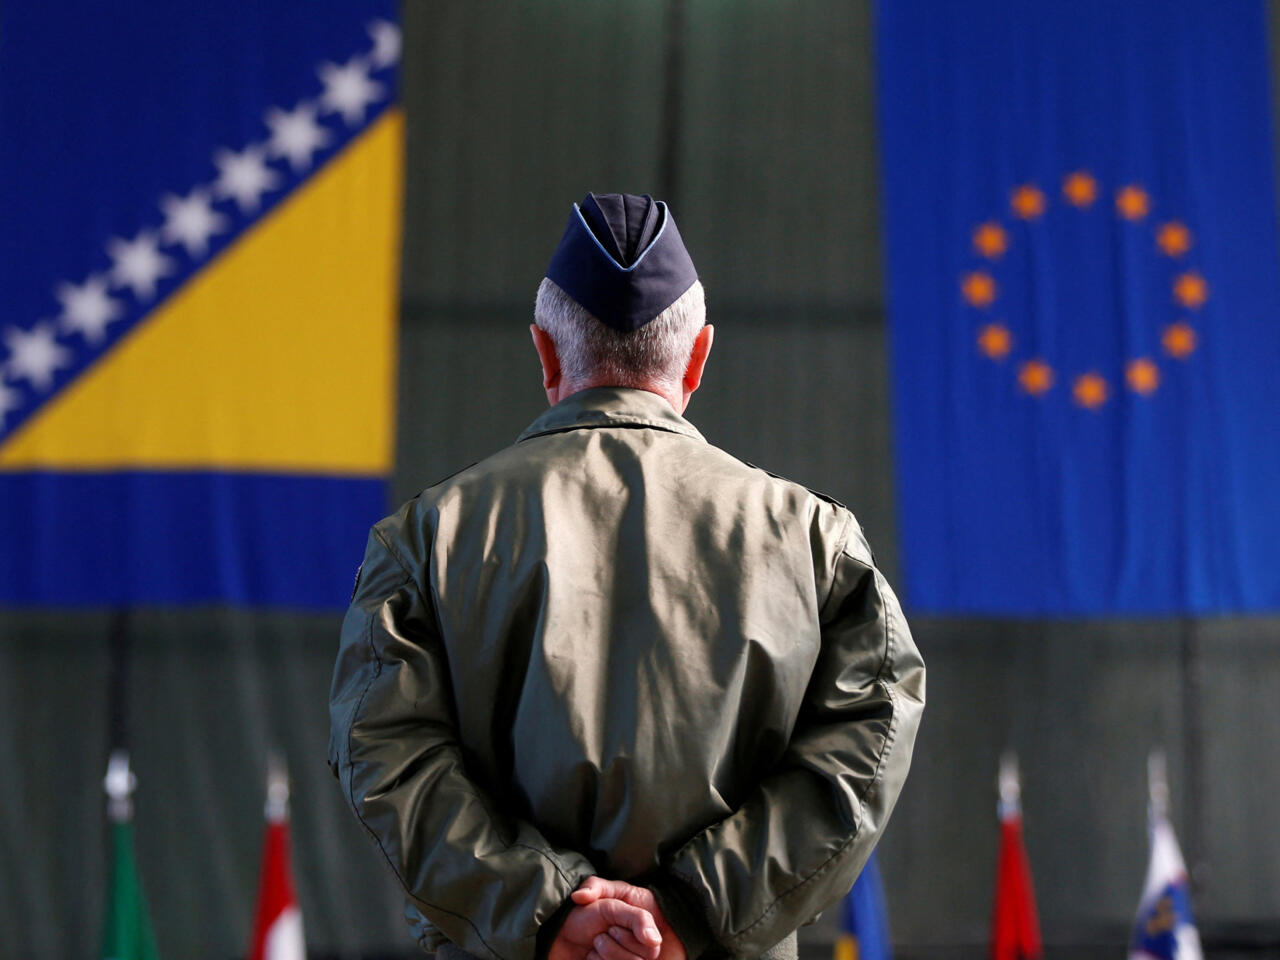 Κομισιόν: Έναρξη ενταξιακών συνομιλιών με τη Βοσνία-Ερζεγοβίνη